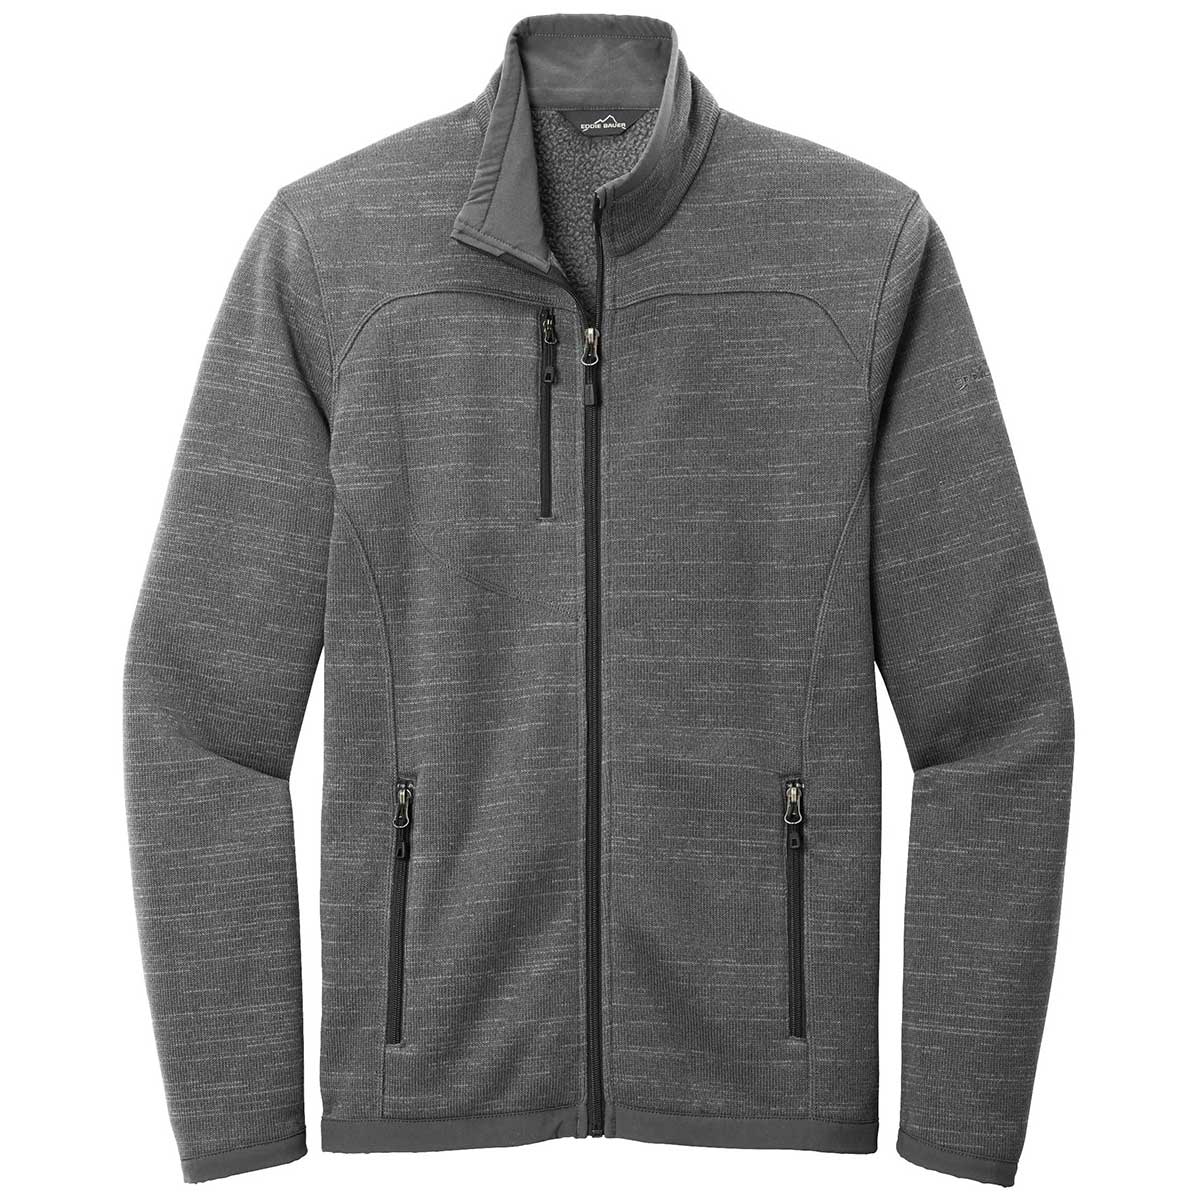  Eddie Bauer Heathered Sweater Fleece Jacket - Men's 153509-M